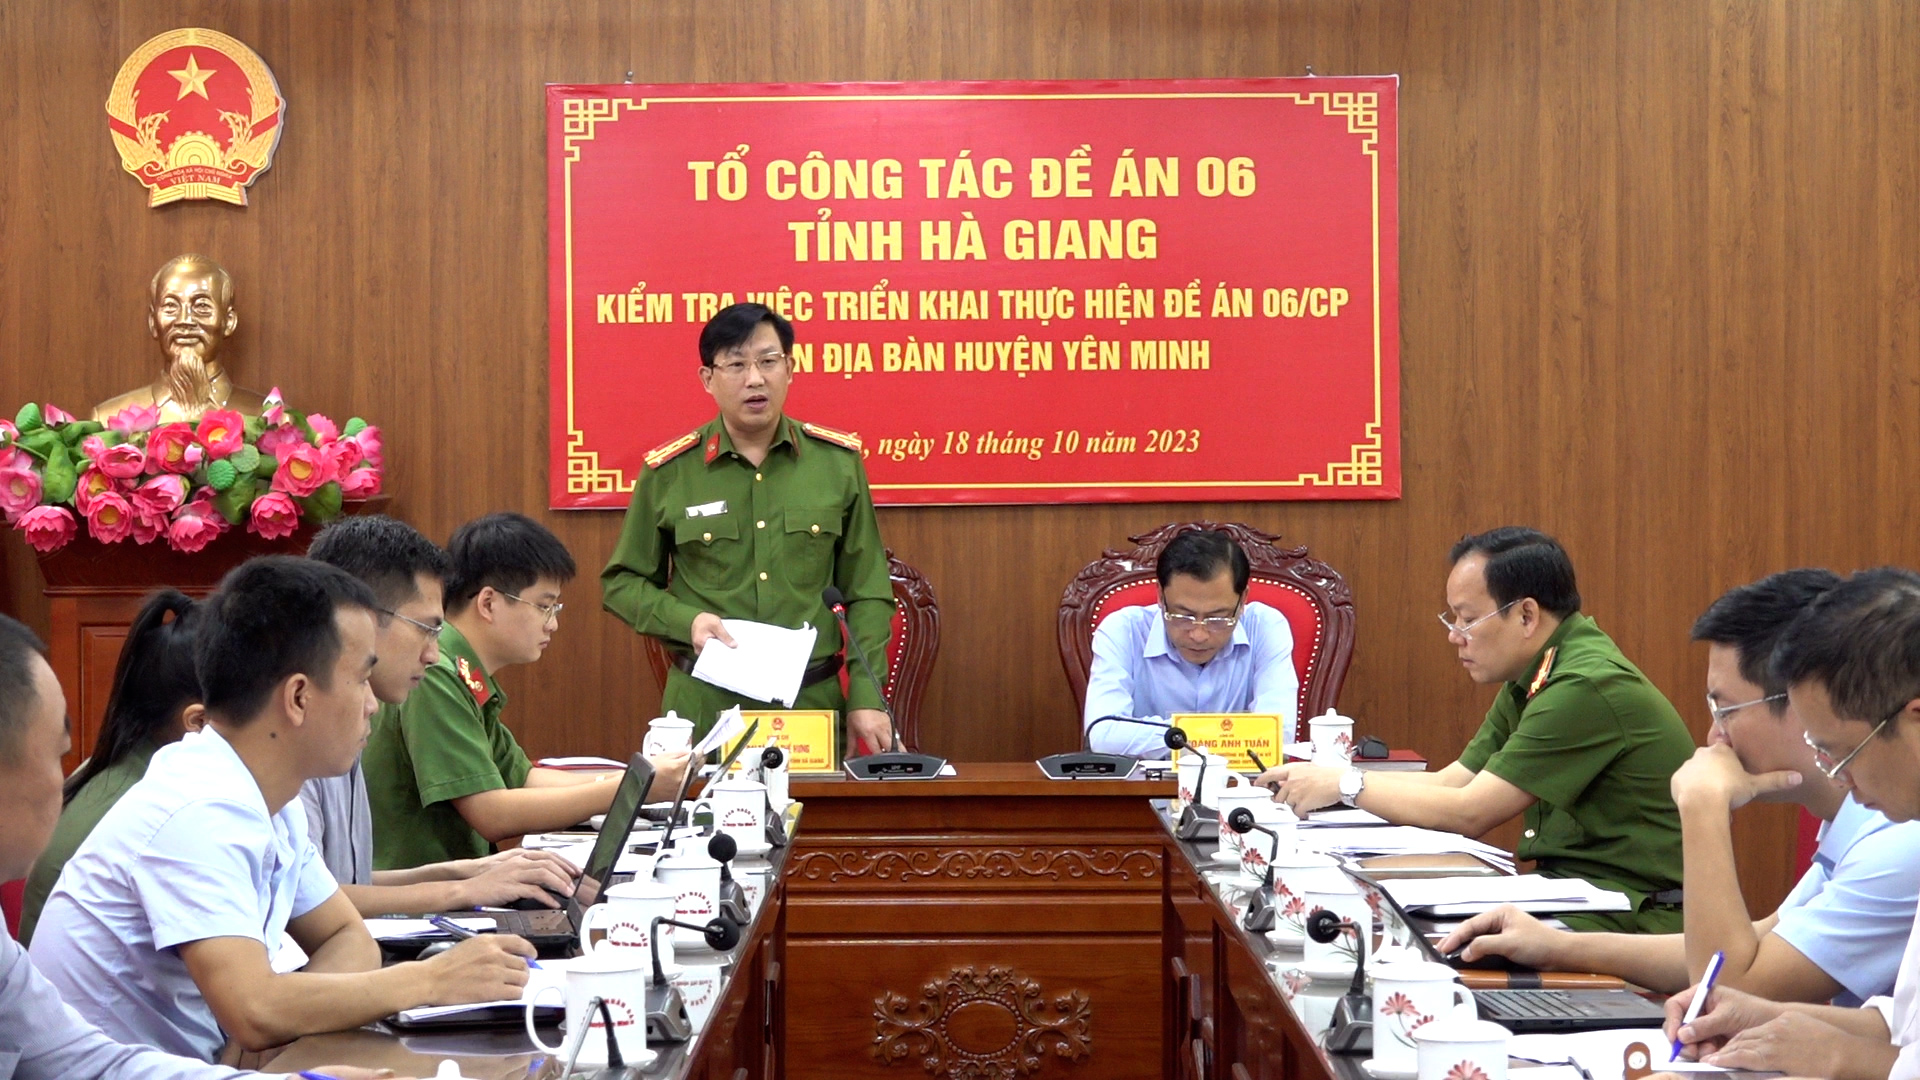 Đoàn kiểm tra Tổ Công tác Đề án 06 tỉnh Hà Giang làm việc tại huyện Yên Minh